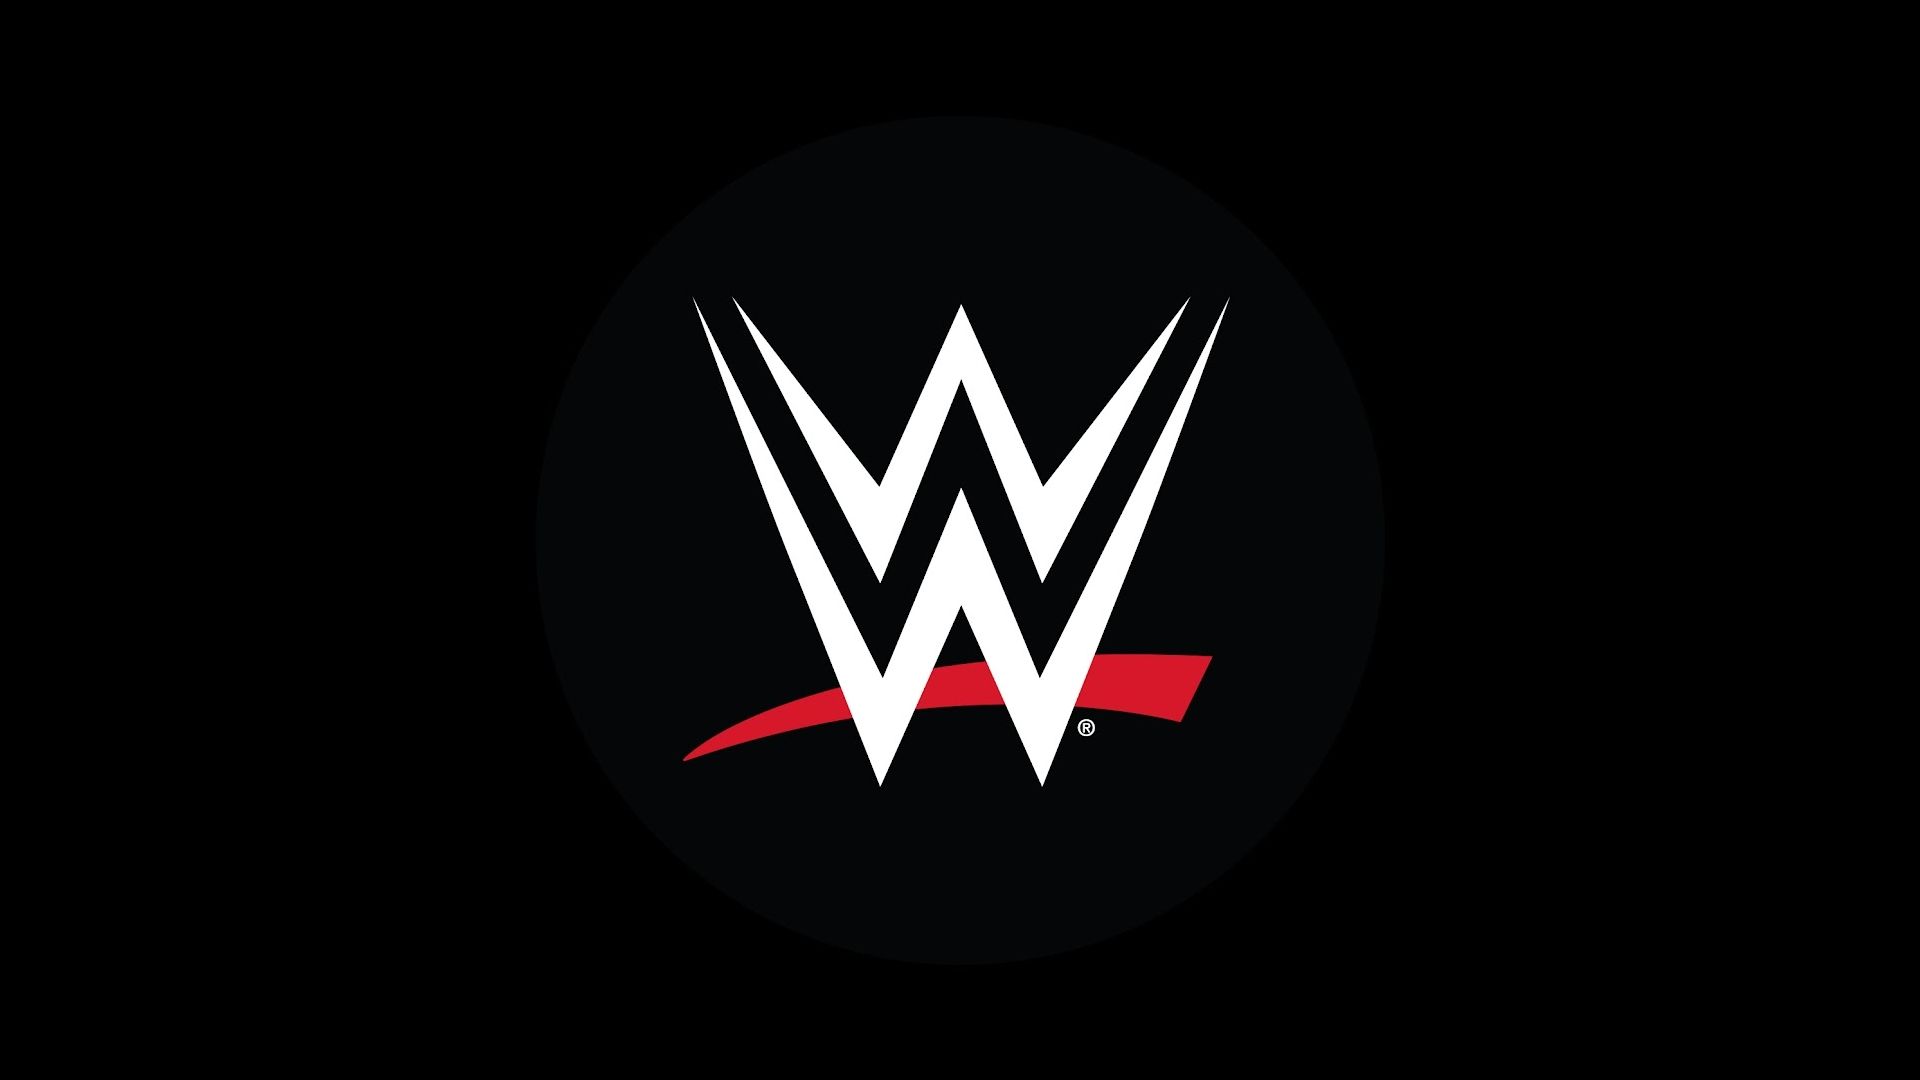 Voulez-vous entrer en contact avec un catcheur de la WWE ?
Souhaitez-vous contacter la WWE pour une collaboration ?